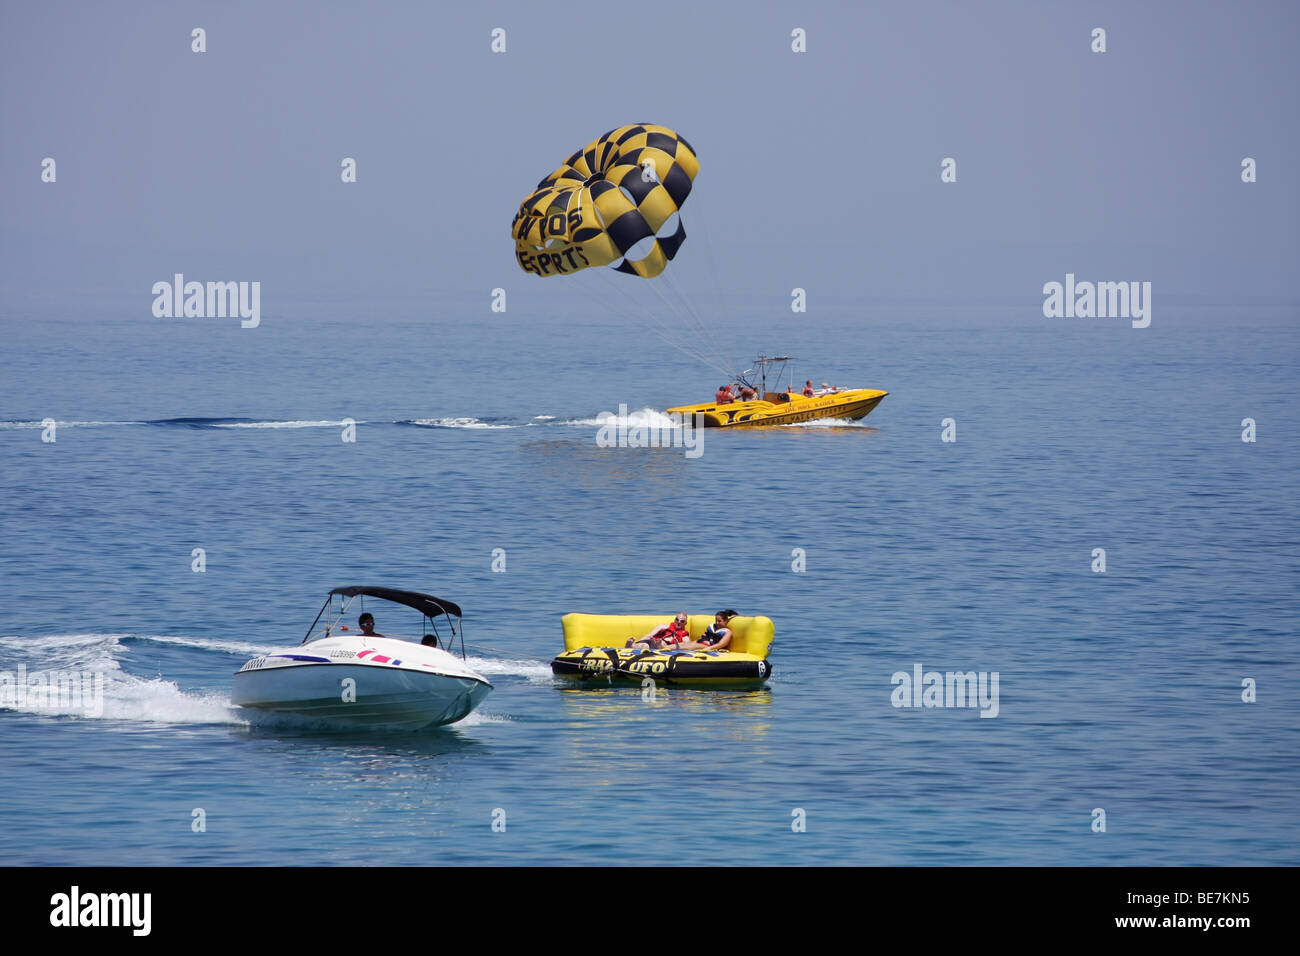 Paragliding-Wasser gleiten am Fig Tree Bay, Protaras, Zypern. Paragliding ist eine der vielen beliebten Wassersport hier. Stockfoto